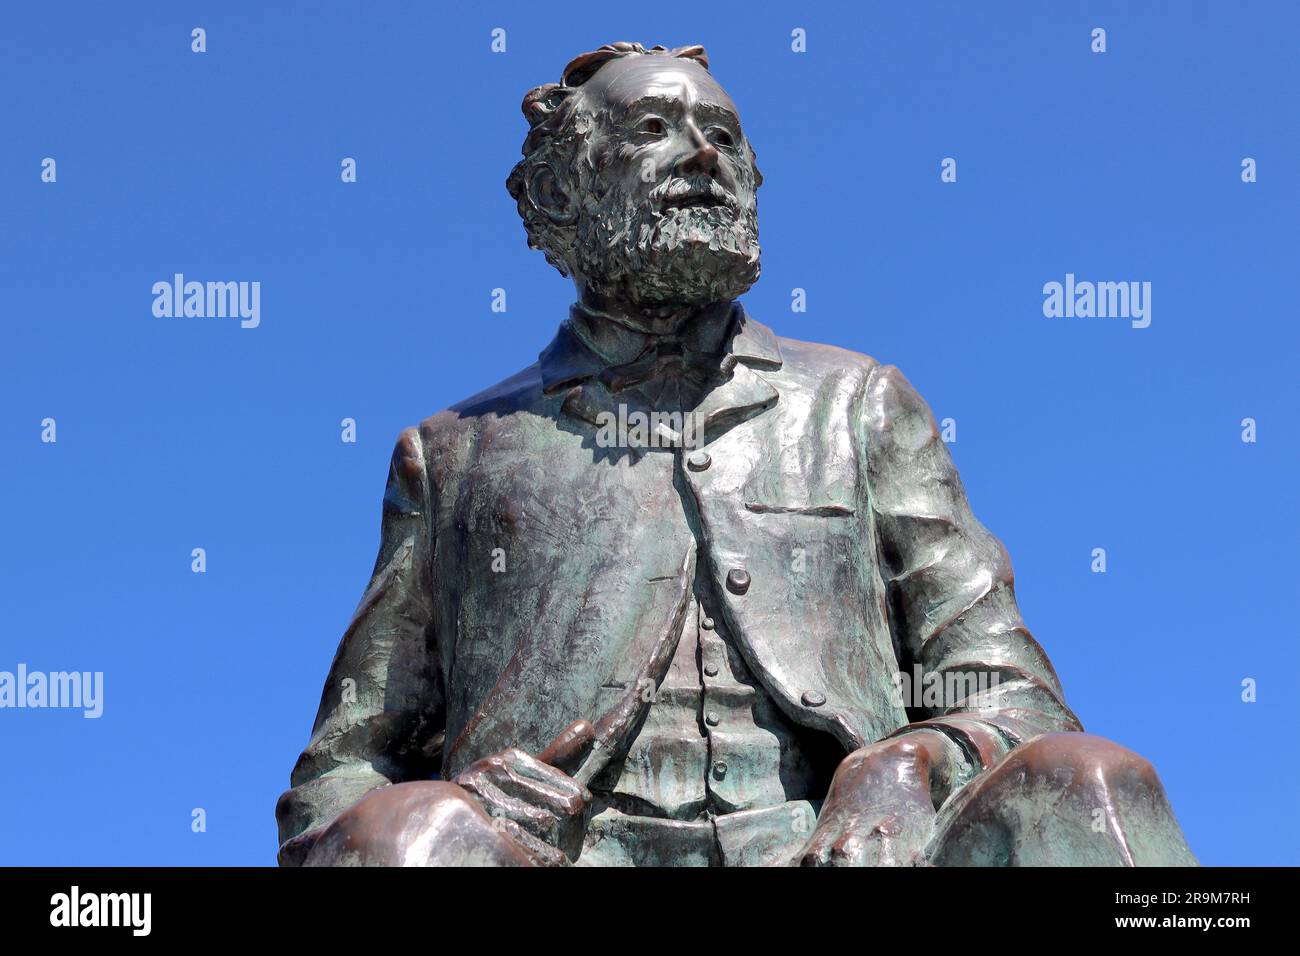 Cabeza y hombros de la escoria de bronce de Julio Verne sentado en un pulpo del escultor local José Morales, jardines de Montero Ríos, Vigo, España. Foto de stock